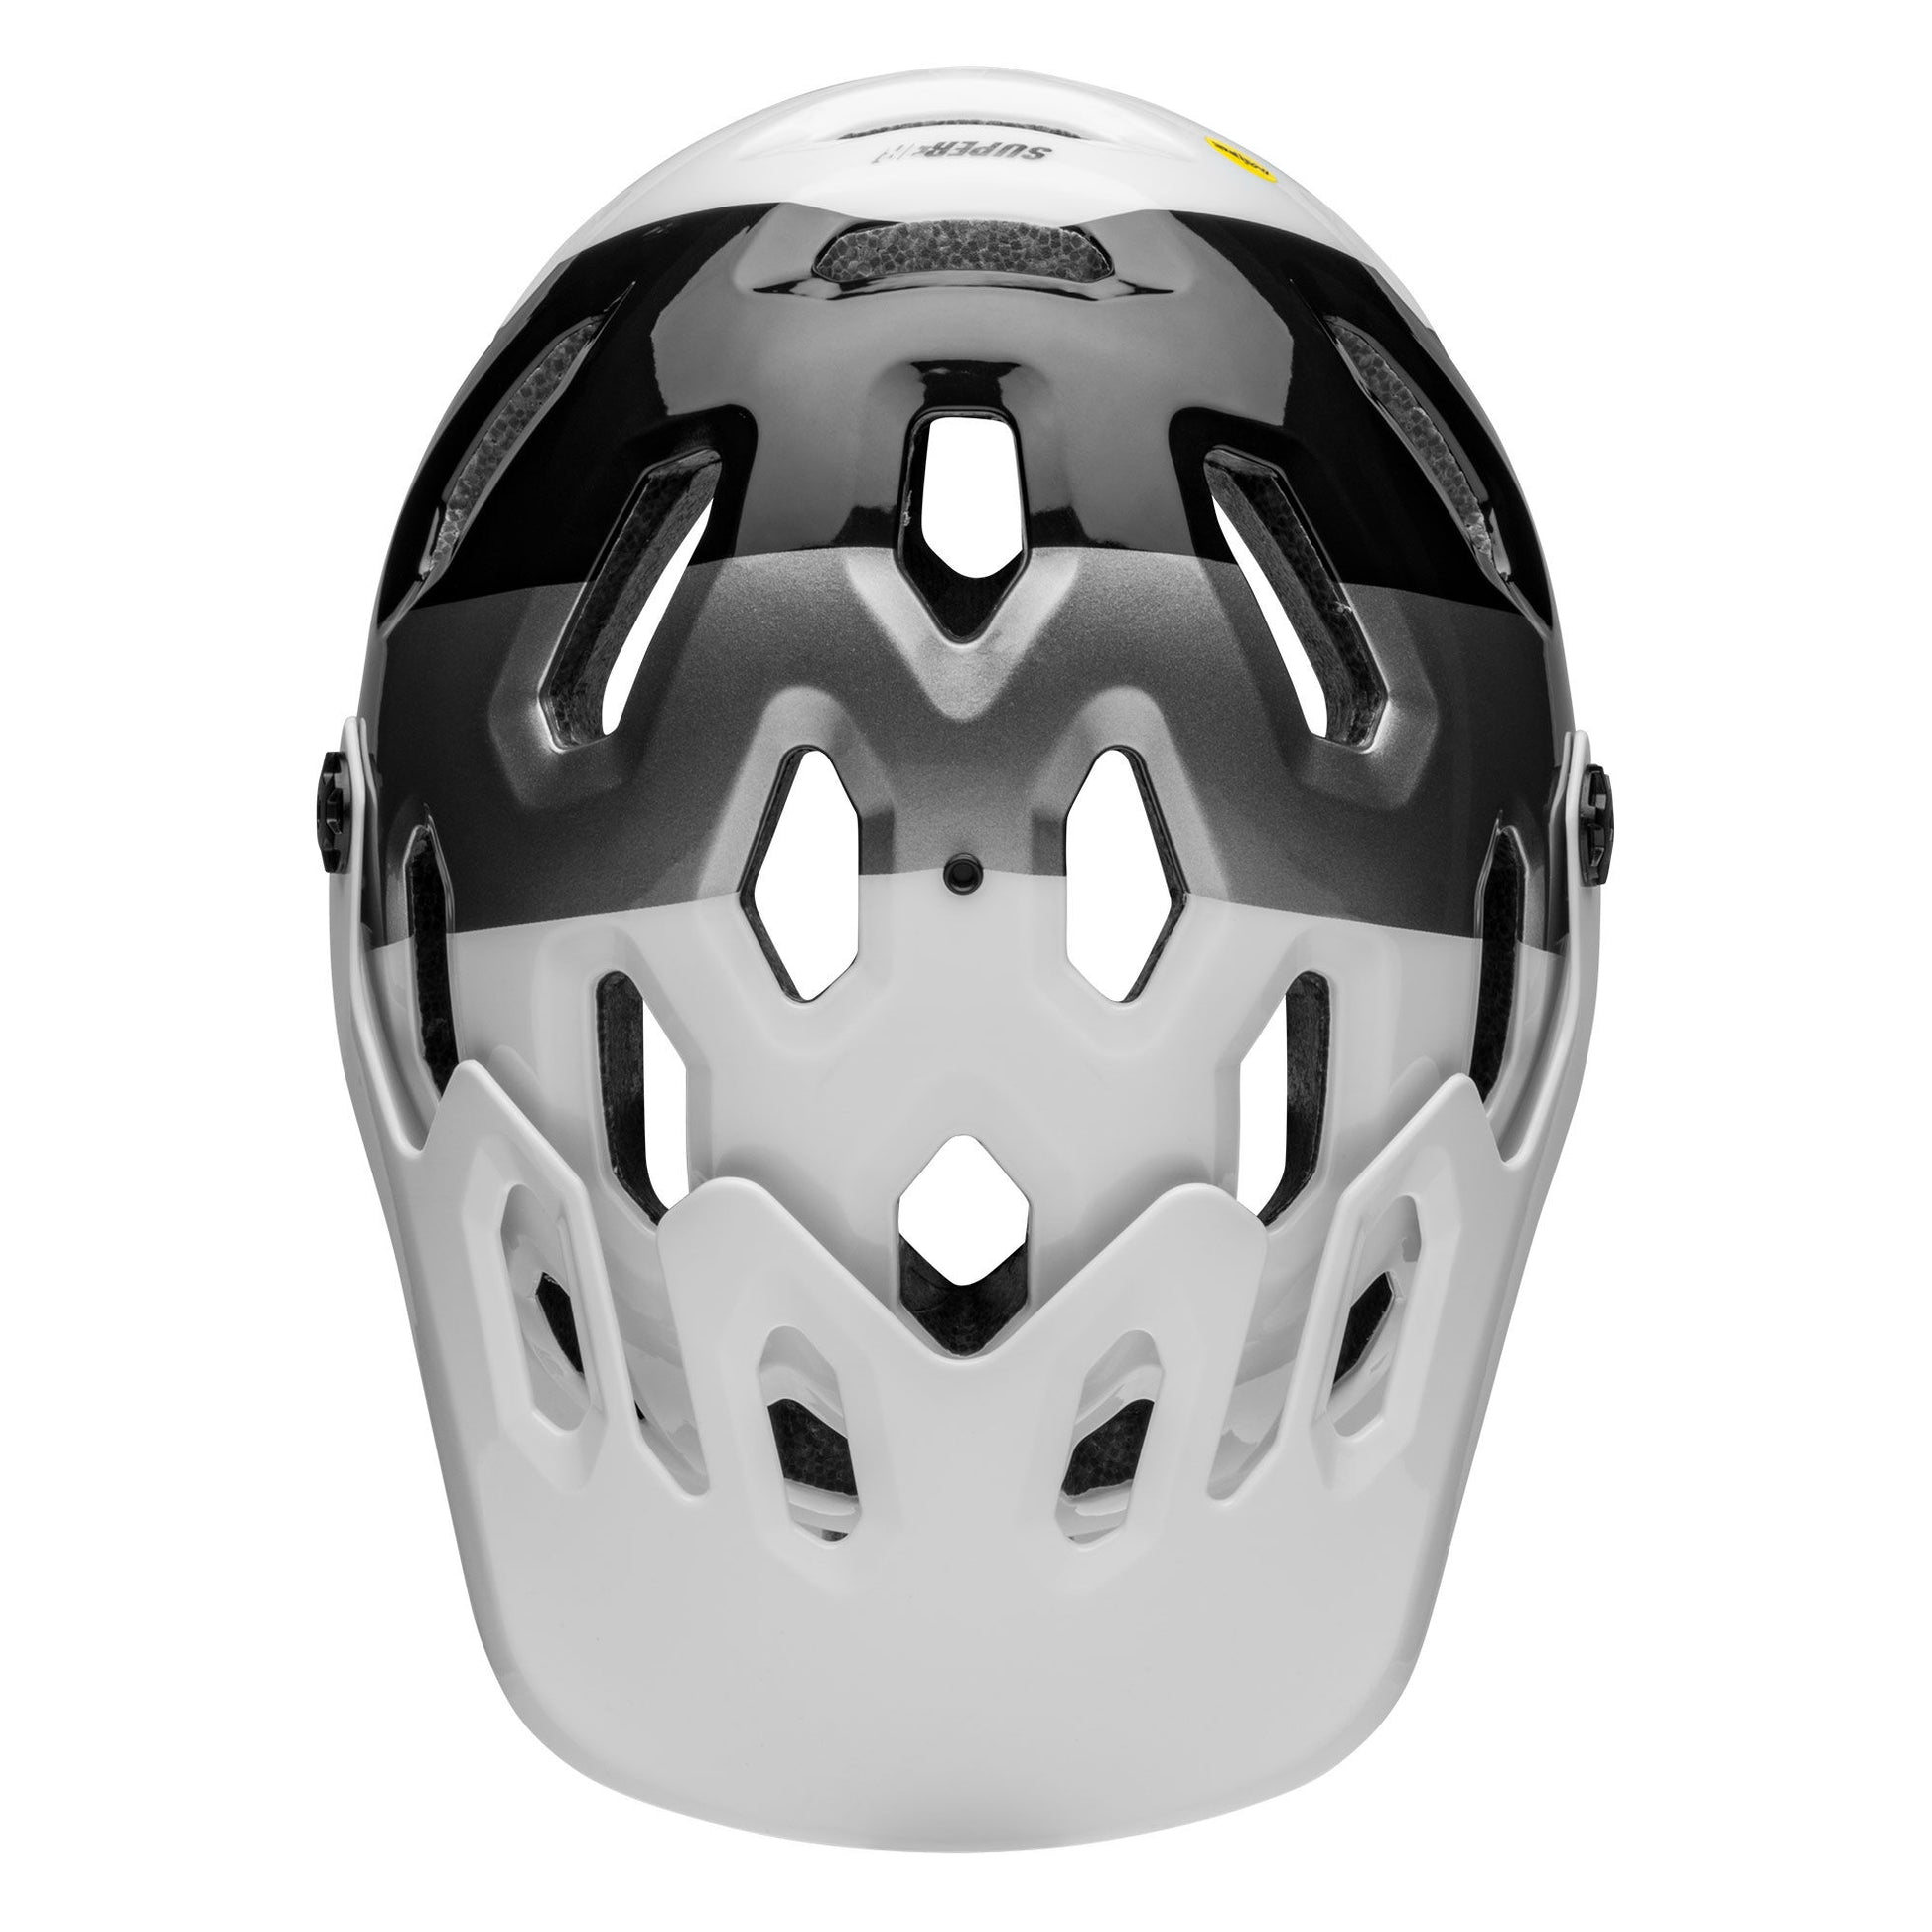 Bell Super 3R MIPS Helmet White/Black Bike Helmets